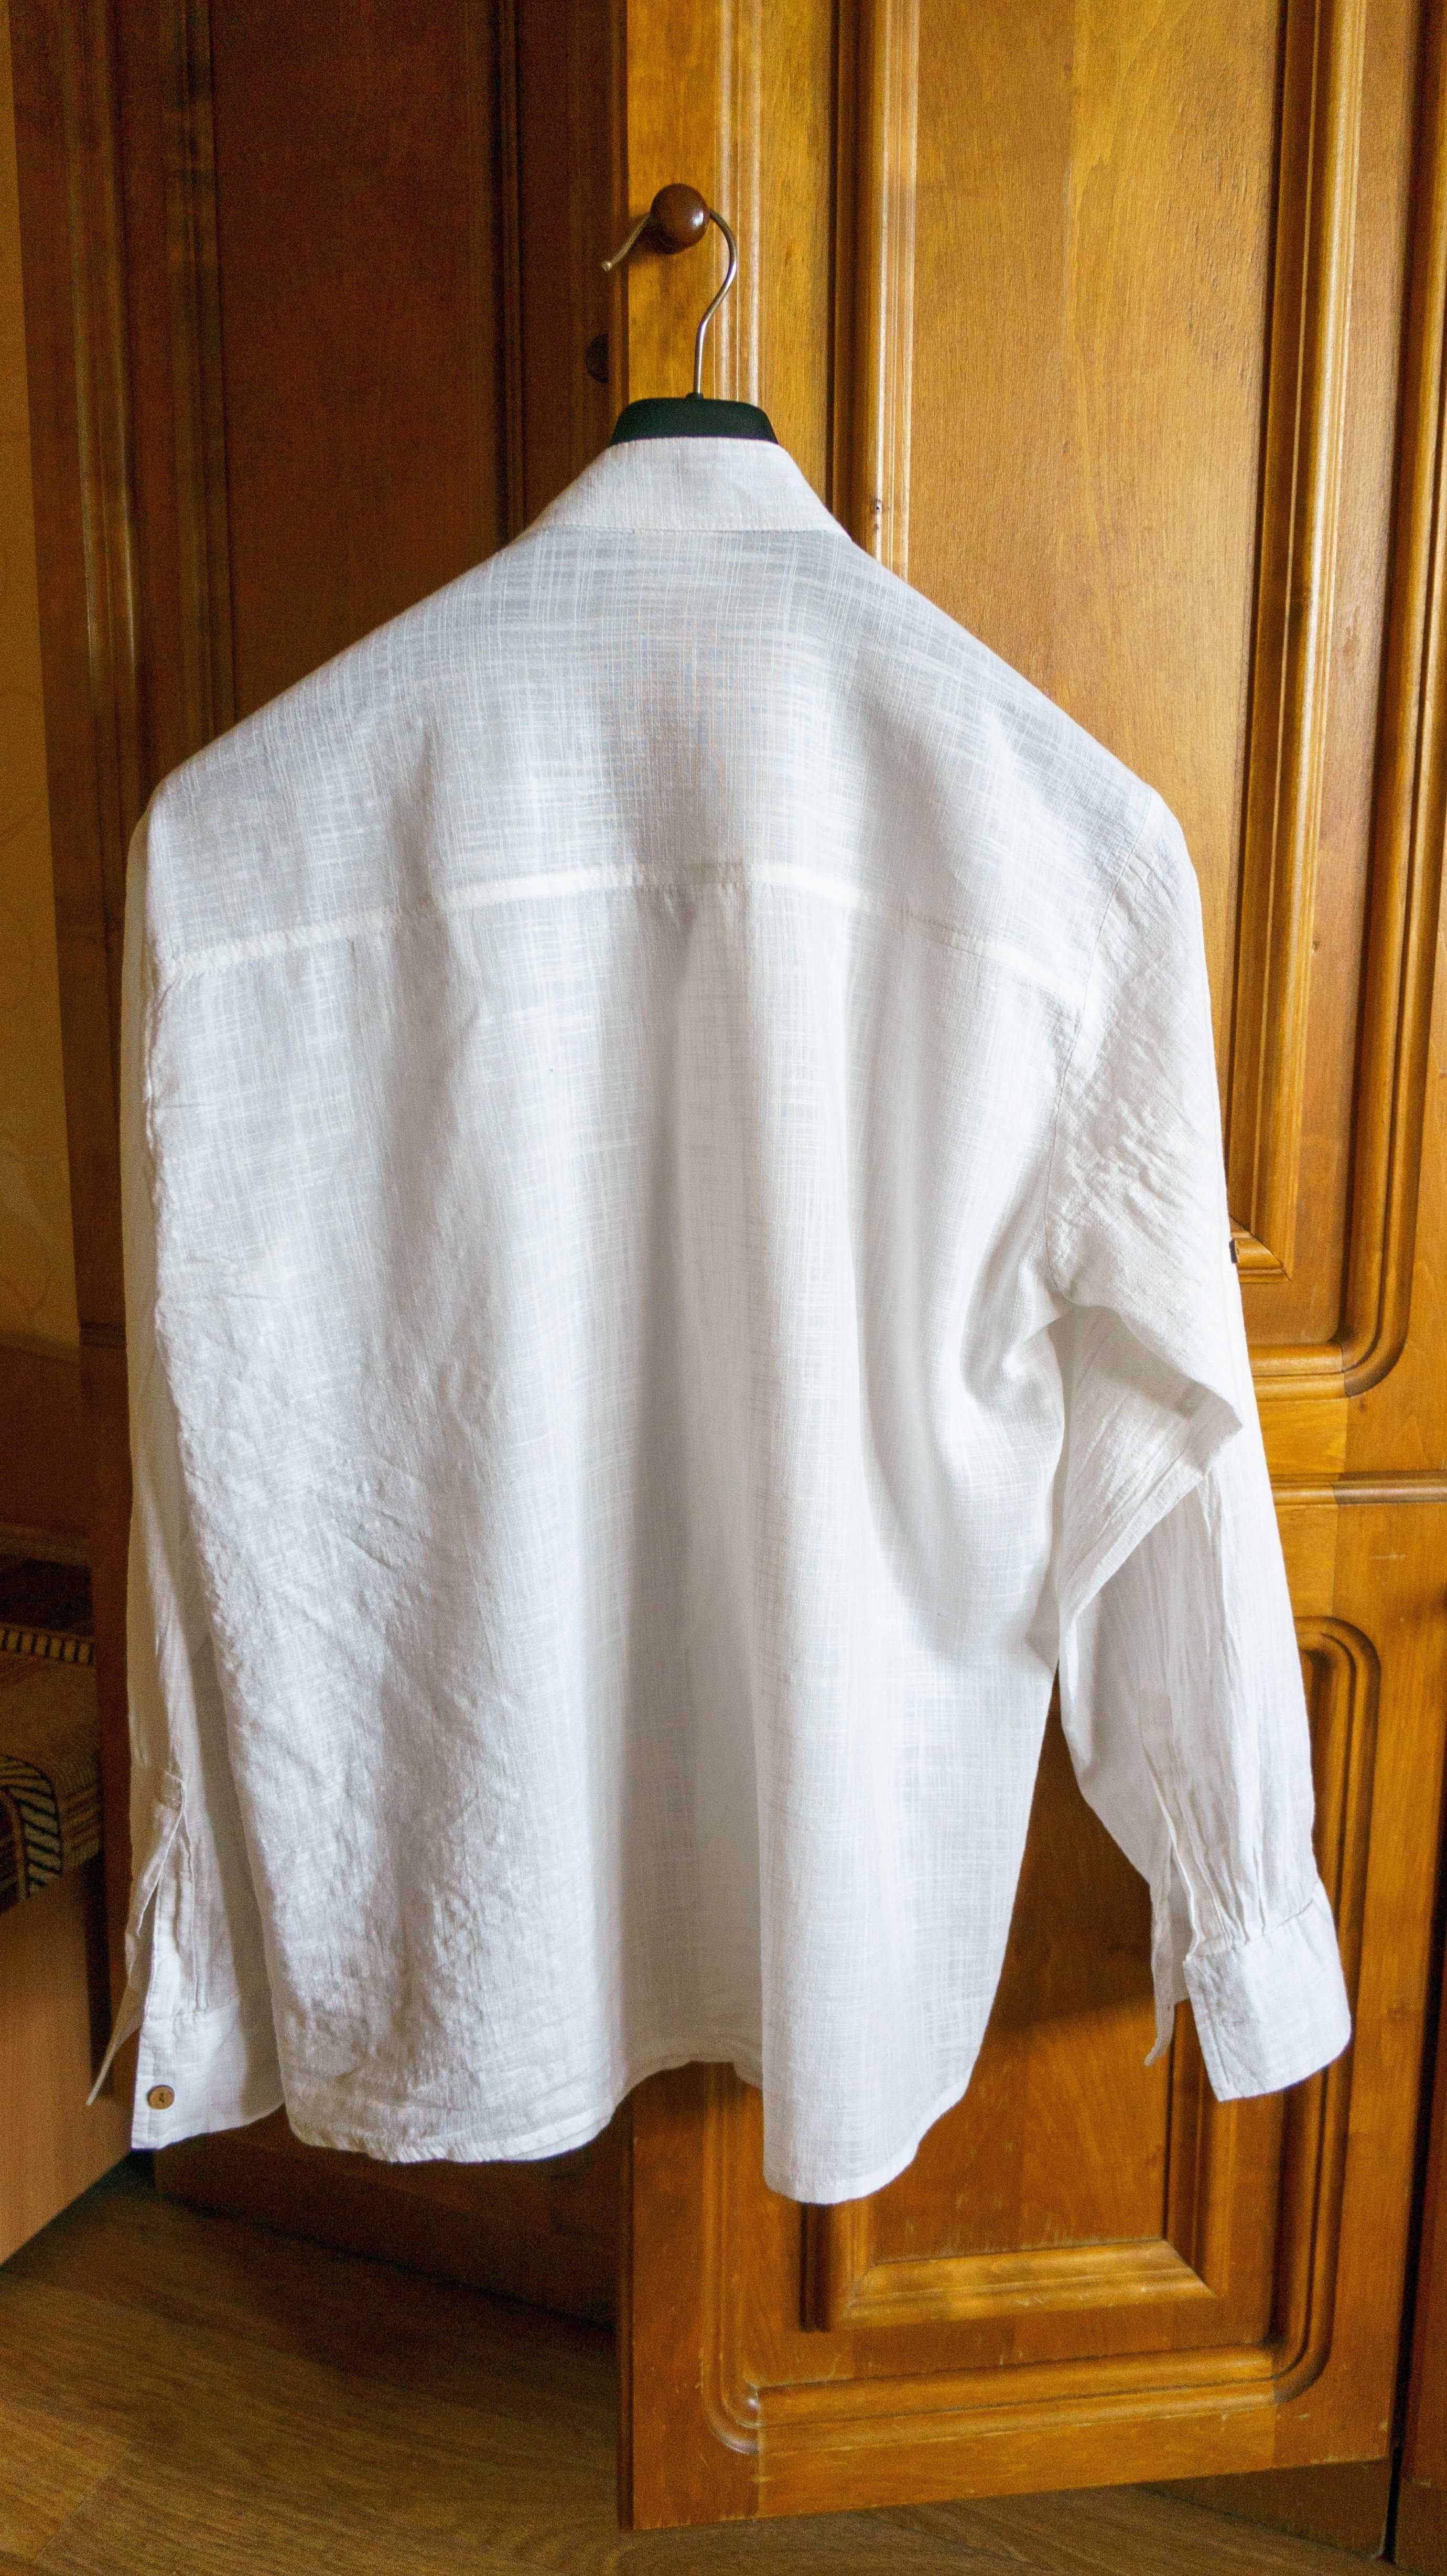 Сорочка літня 100% cotton Heaven Ephesus рубашка поло